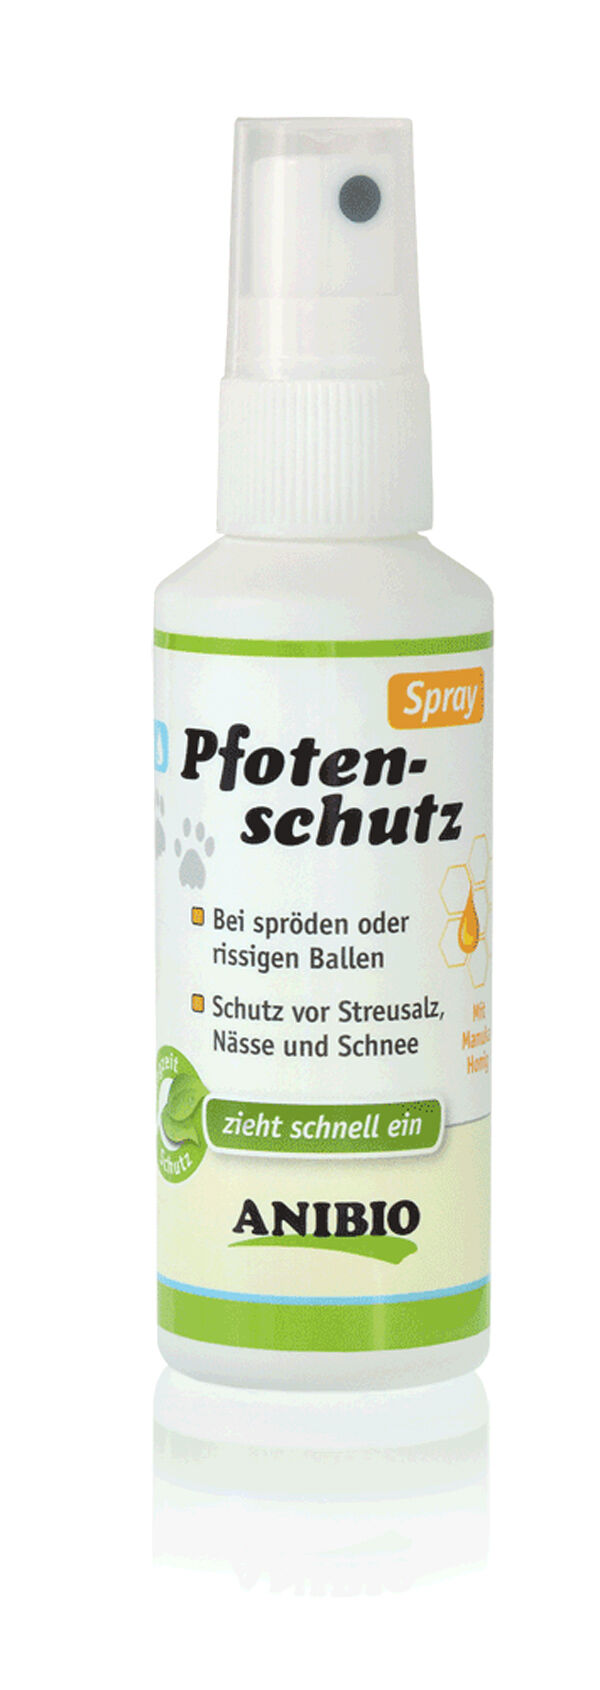 Anibio-Pfotenschutz-Spray-spruede-pfoten-hund-katze-SB-95019